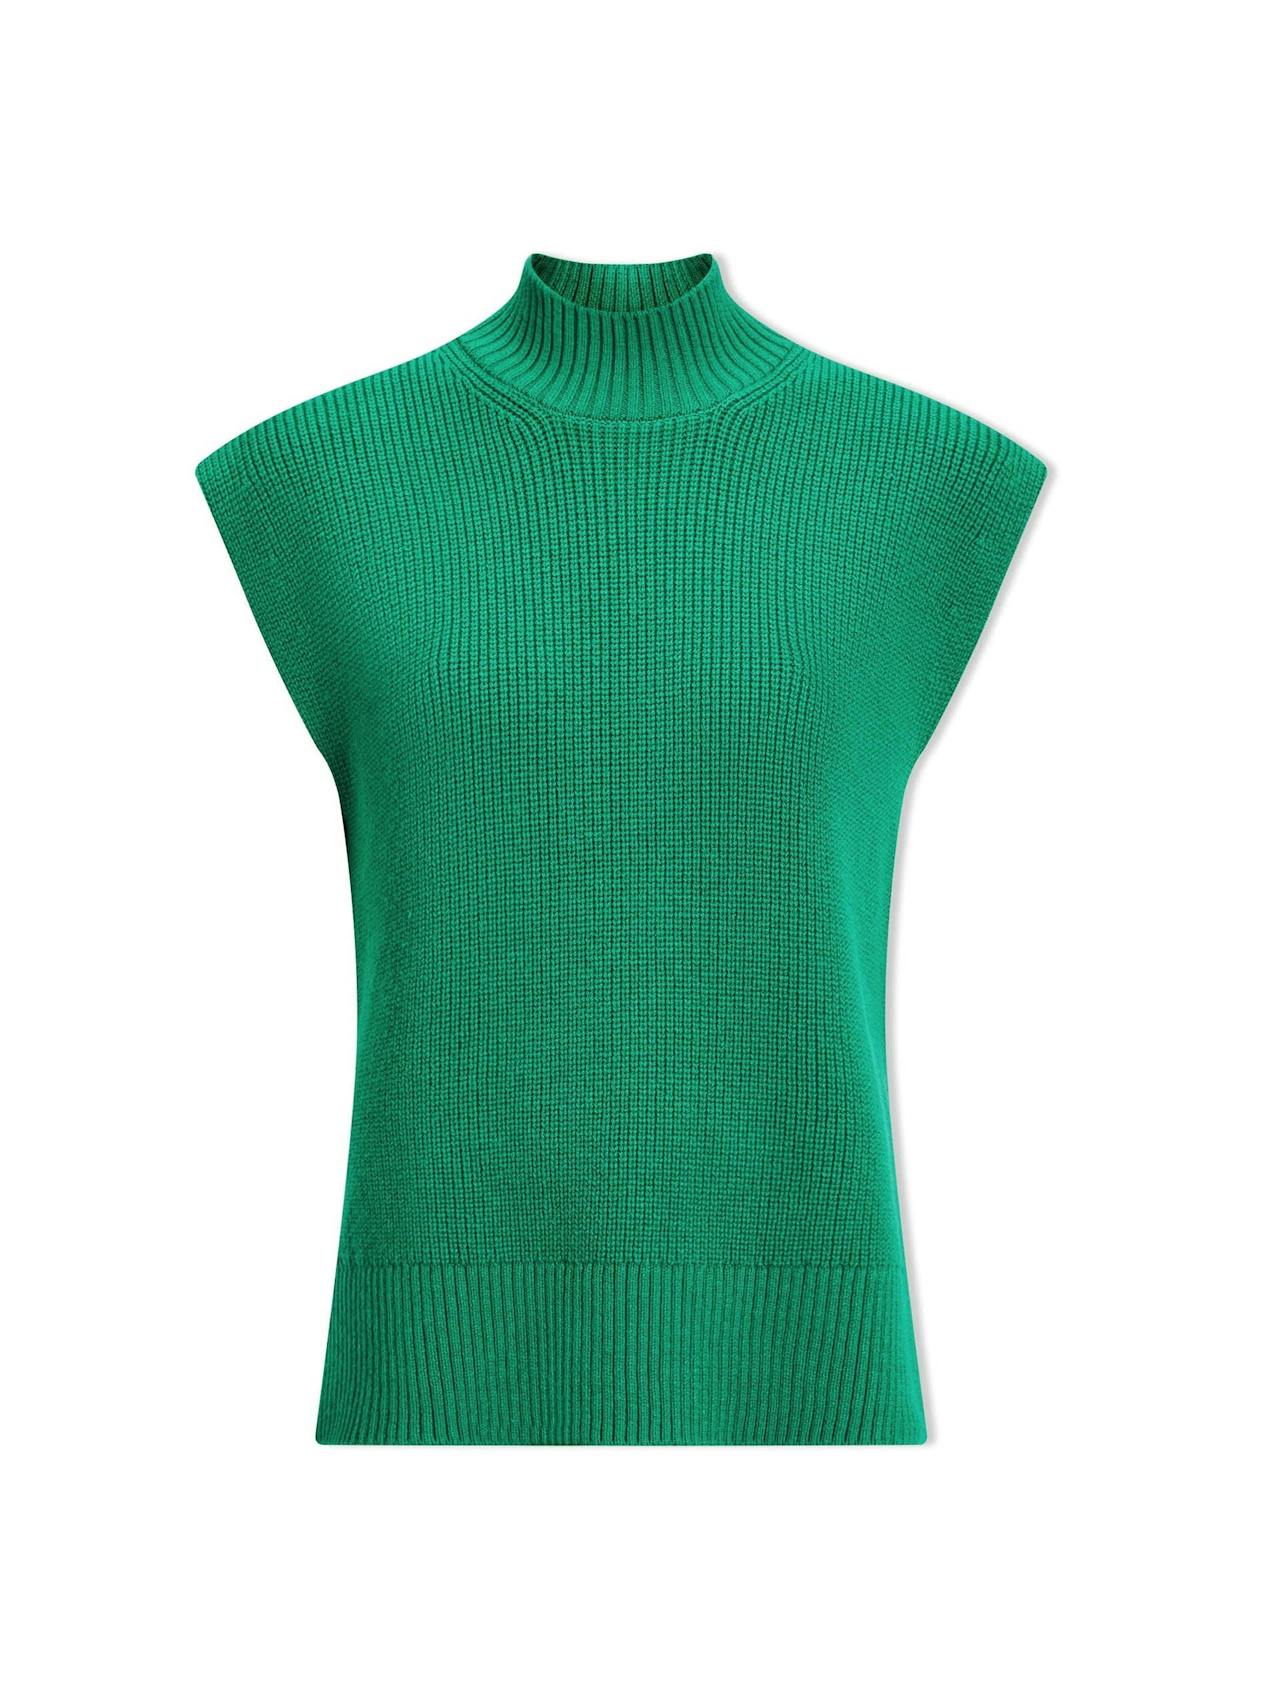 Emerald green Janice cotton blend funnel neck sleeveless jumper